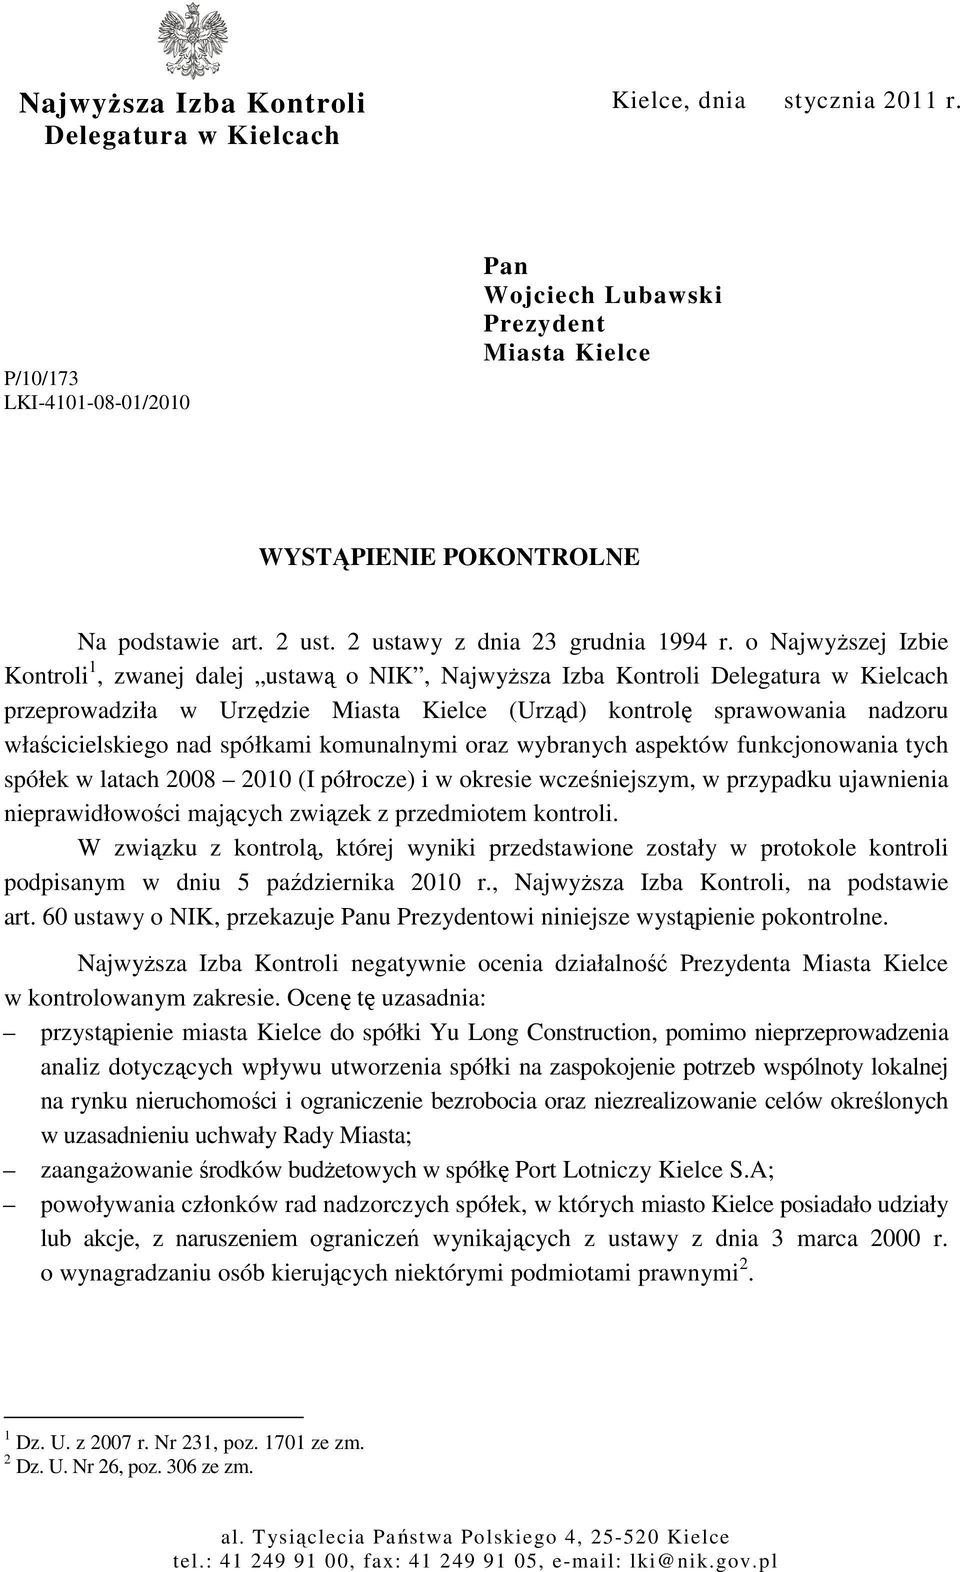 o NajwyŜszej Izbie Kontroli 1, zwanej dalej ustawą o NIK, NajwyŜsza Izba Kontroli Delegatura w Kielcach przeprowadziła w Urzędzie Miasta Kielce (Urząd) kontrolę sprawowania nadzoru właścicielskiego